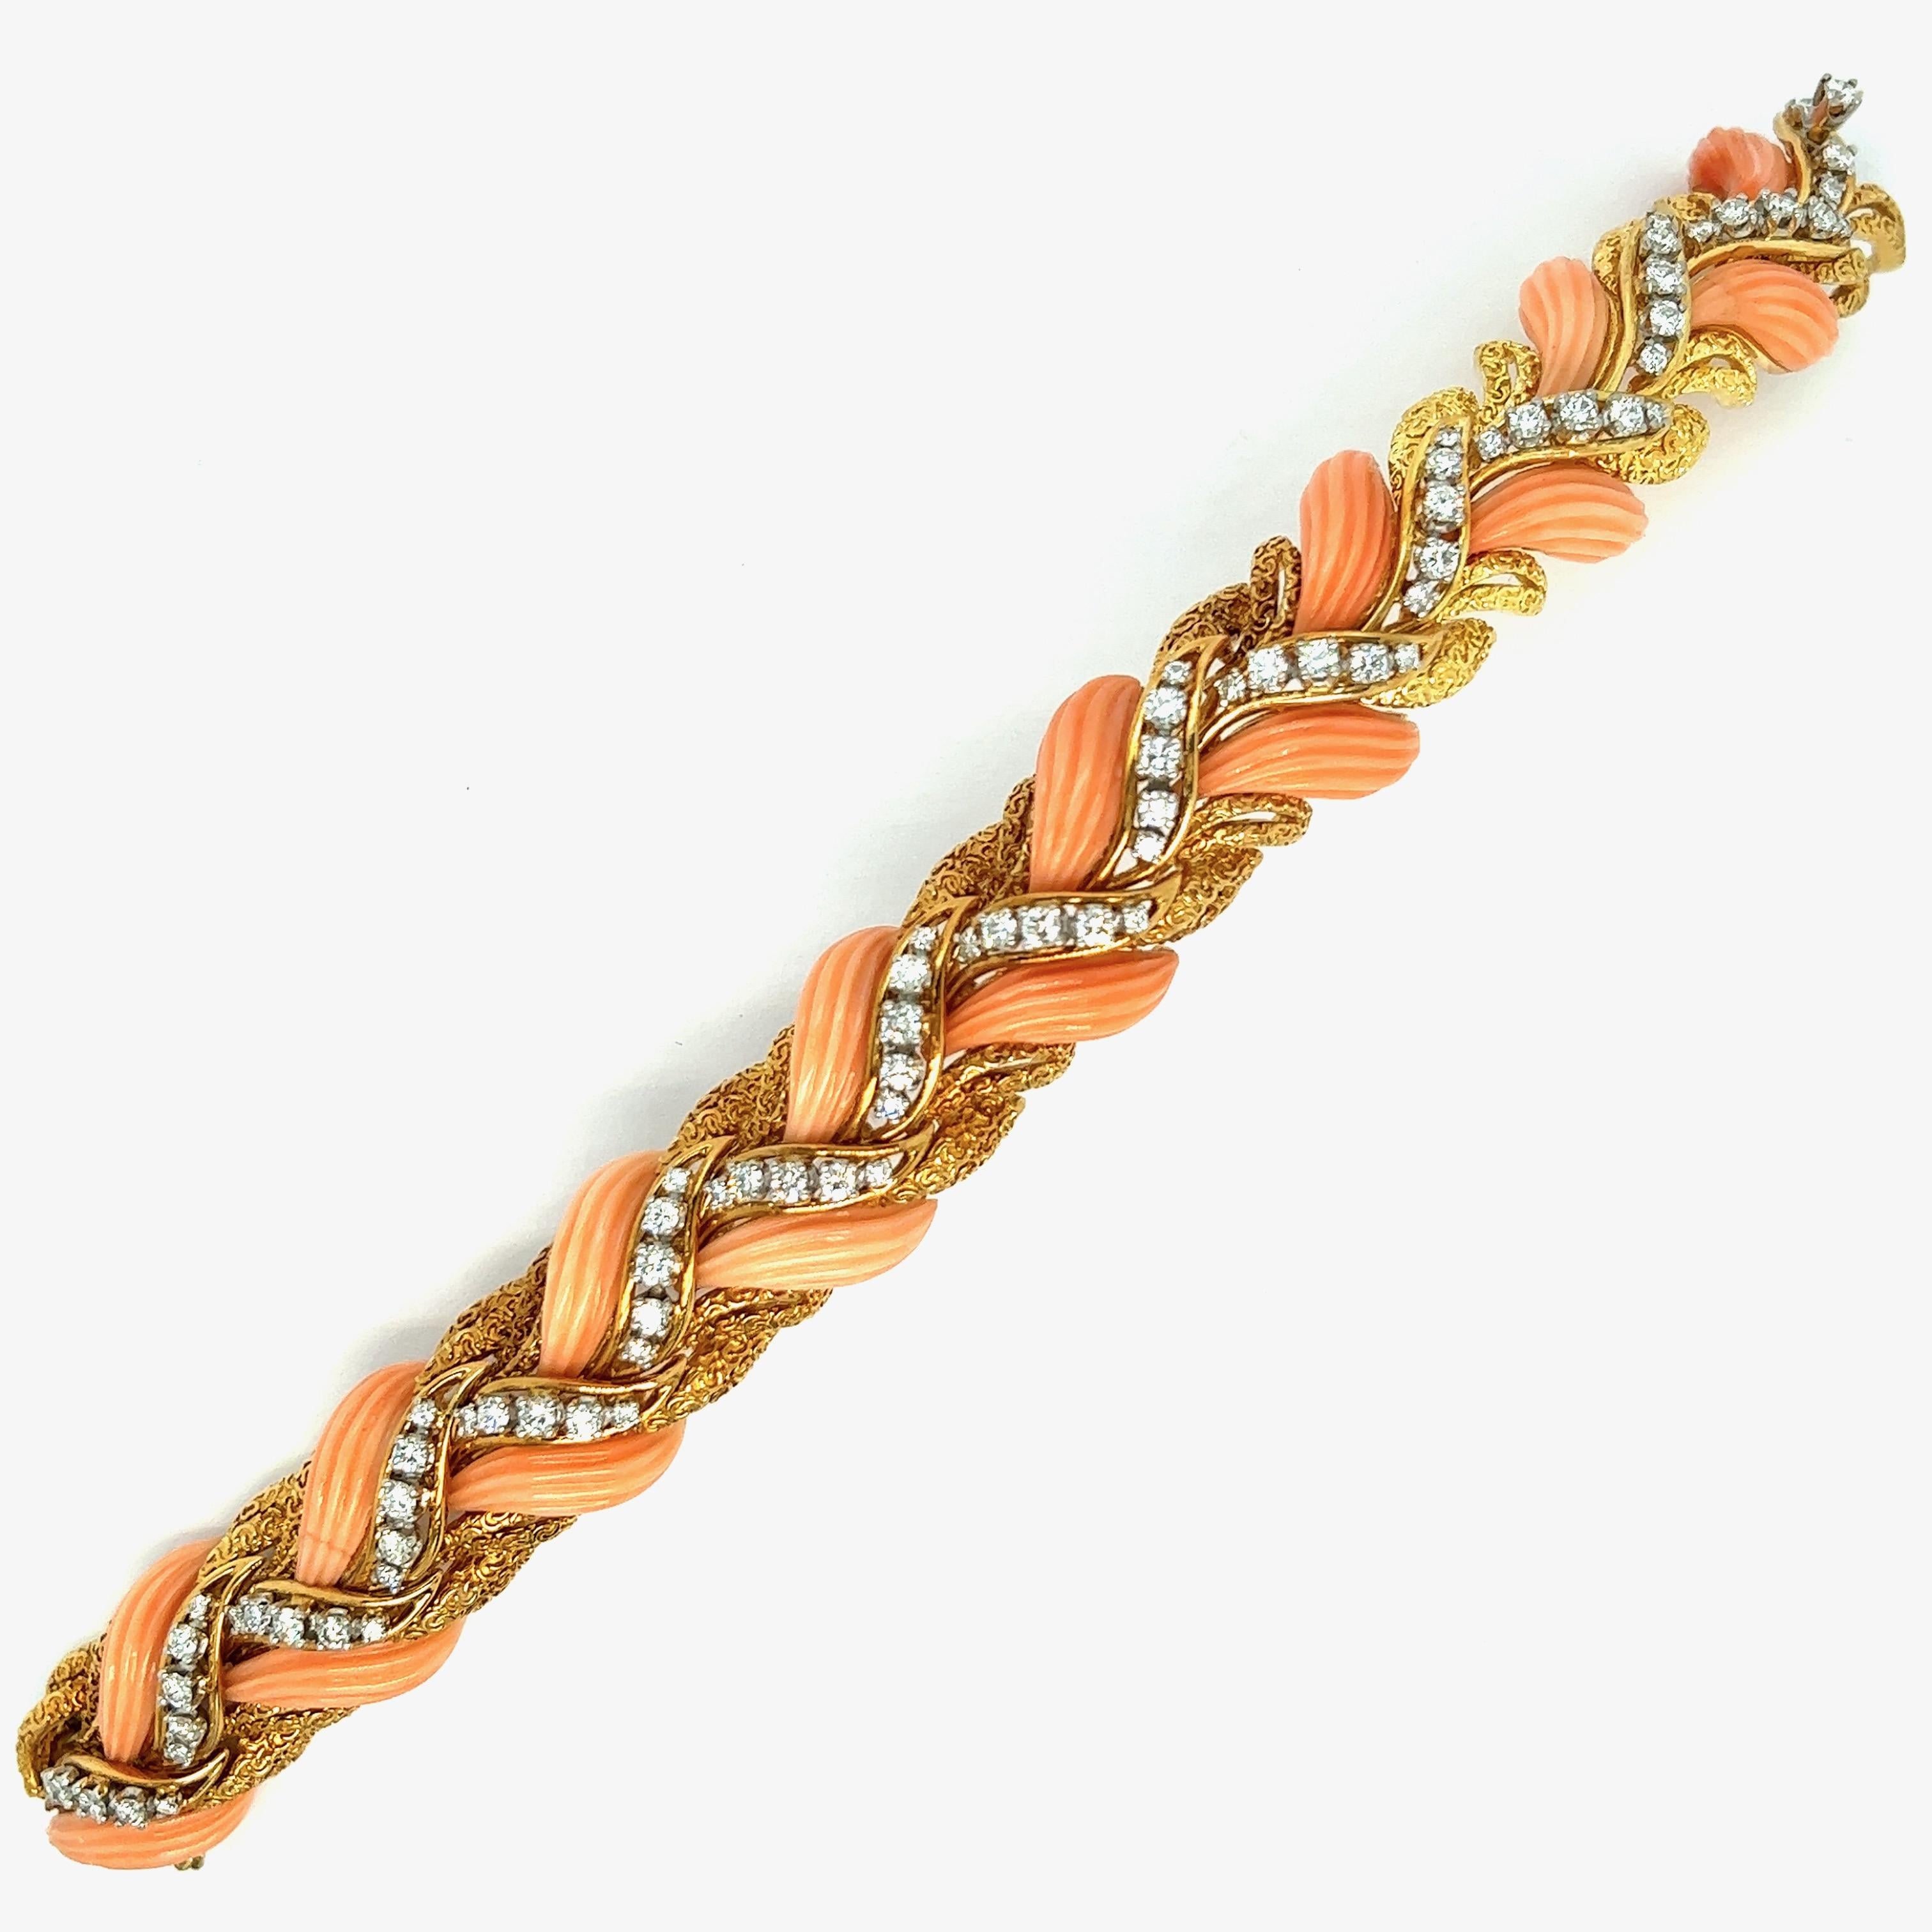 Van Cleef & Arpels bracelet peau d'ange corail diamant

Bracelet en corail peau d'angle finement sculpté, avec 80 diamants ronds de taille brillant (VS1-VS2, F-G), de taille progressive, et pesant environ 5 carats ; marqué VCA 

Taille : largeur